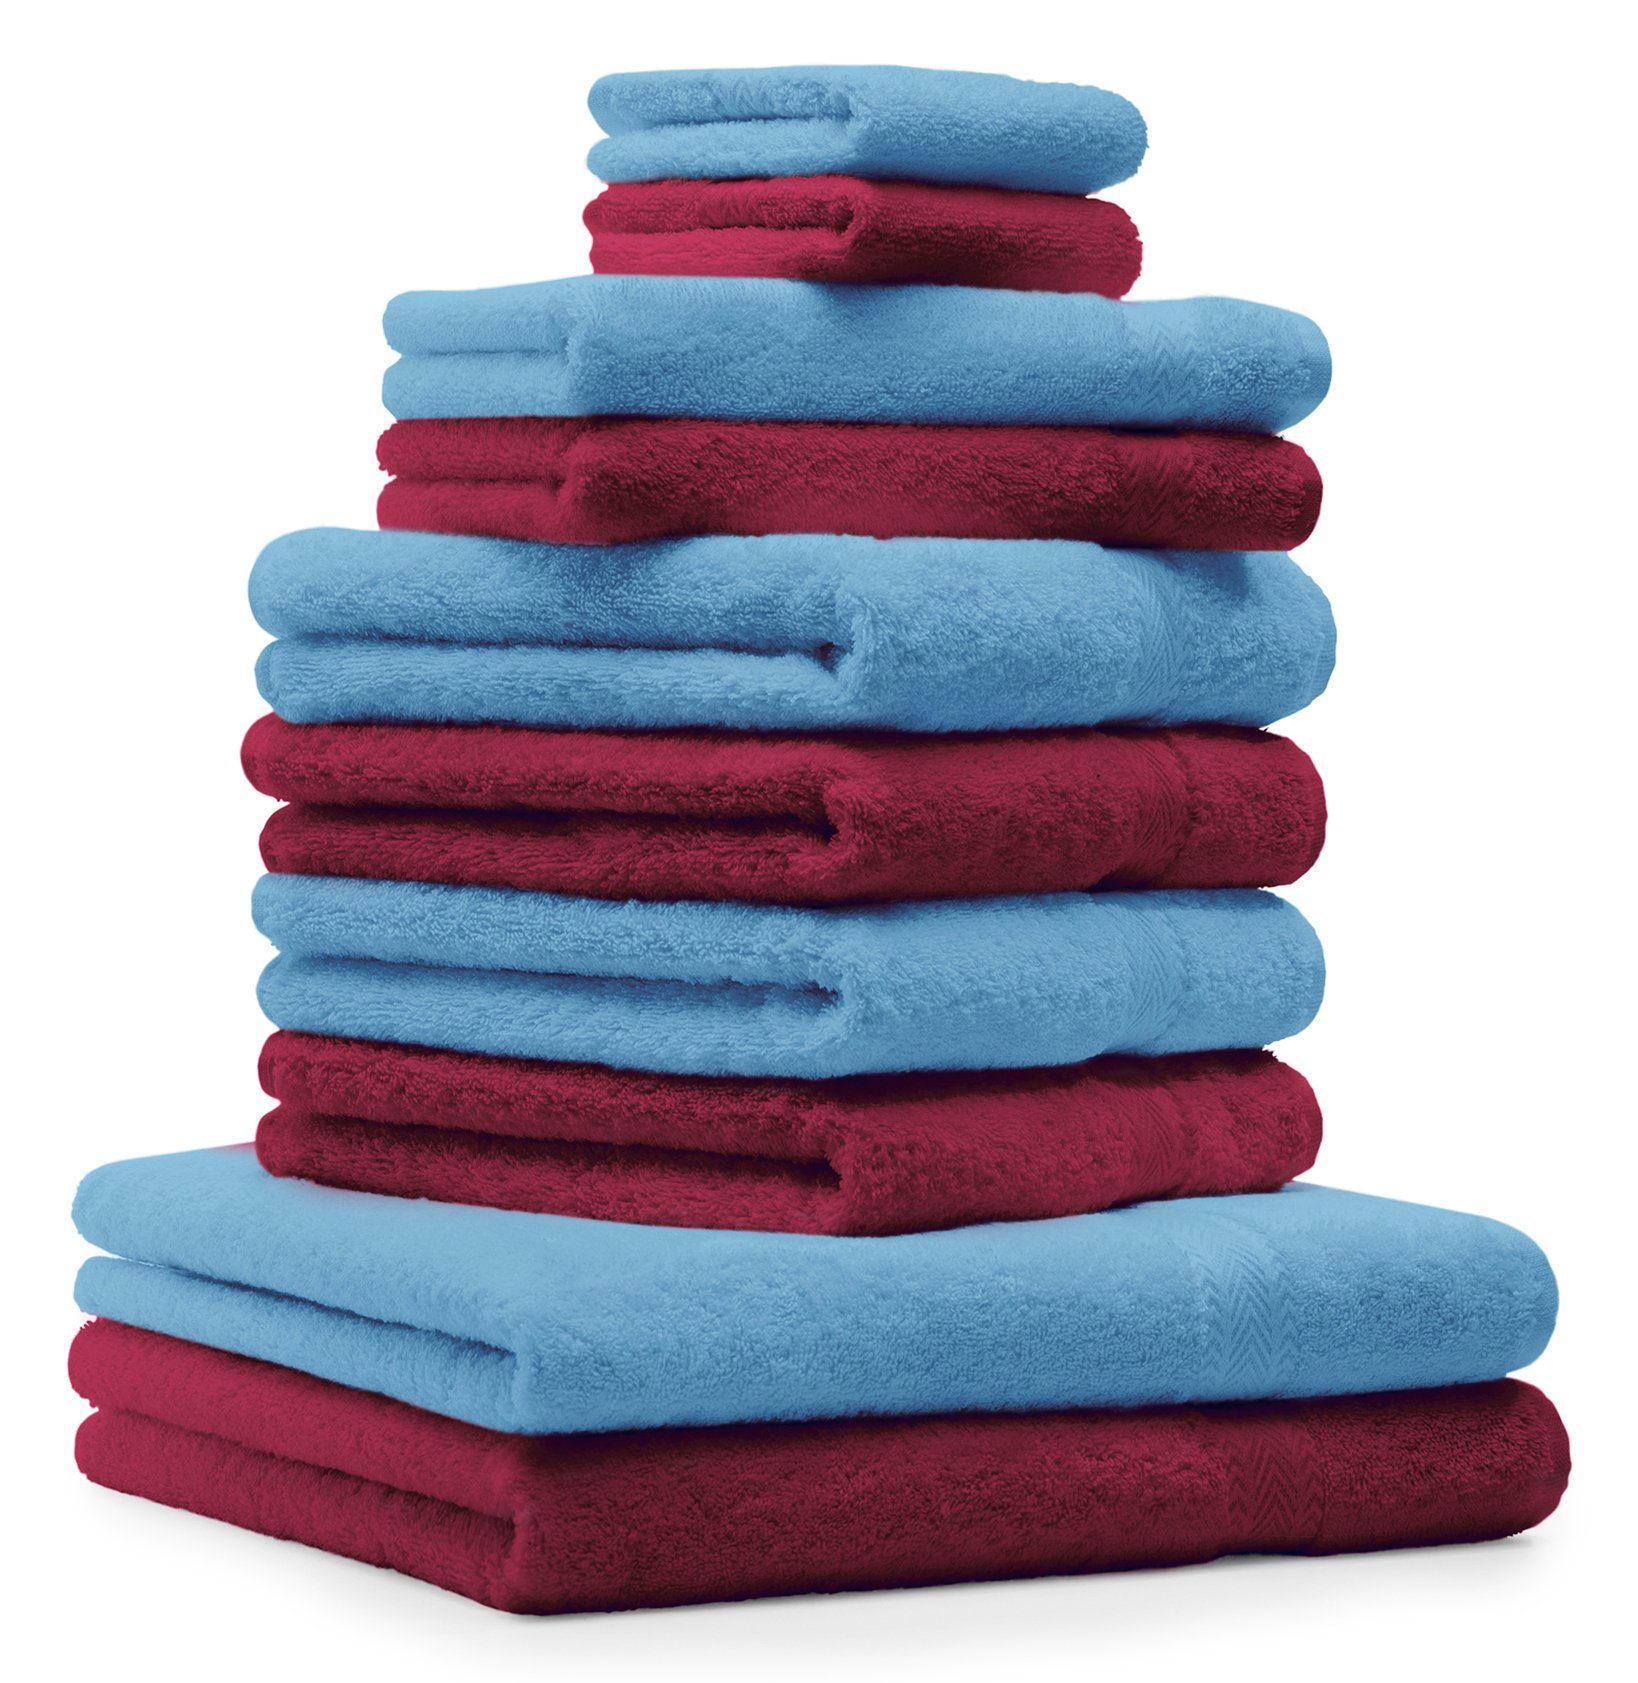 Betz Handtuch Set 10-TLG. Handtuch-Set Premium Farbe Dunkelrot & Hellblau, 100% Baumwolle, (10-tlg)